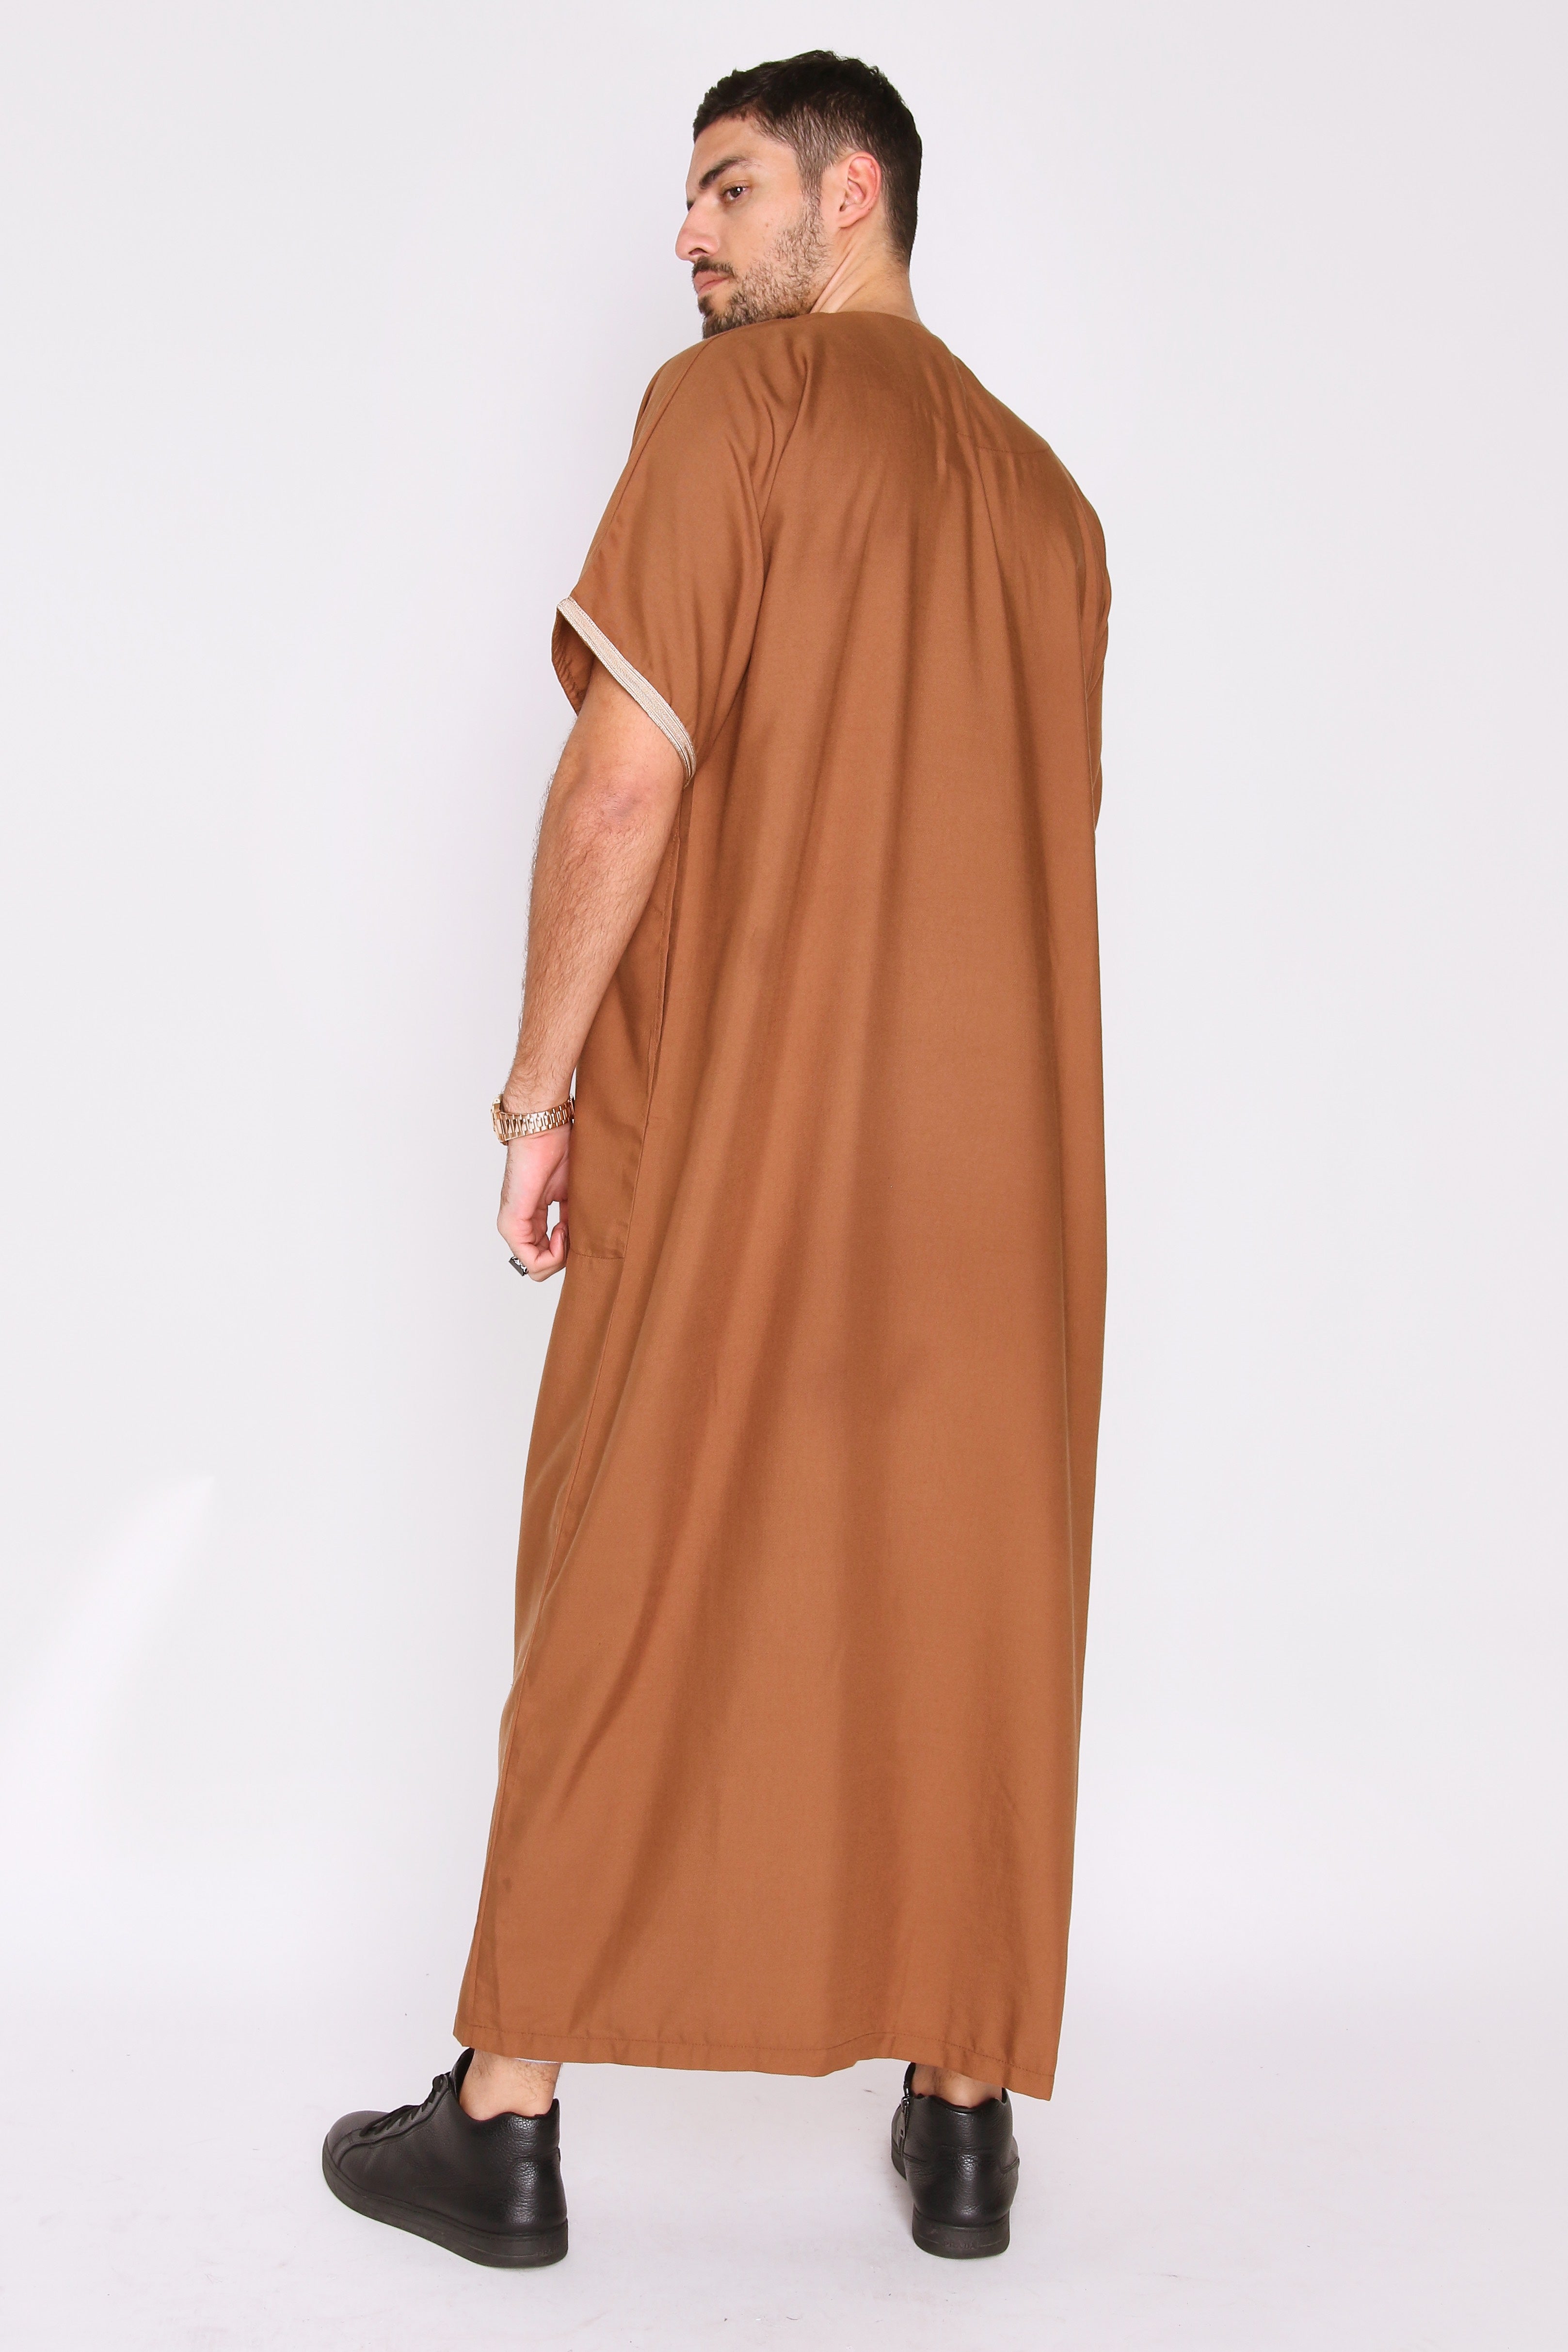 Gandoura Badr Embroidered Short Sleeve Men's Long Robe Thobe in Brown